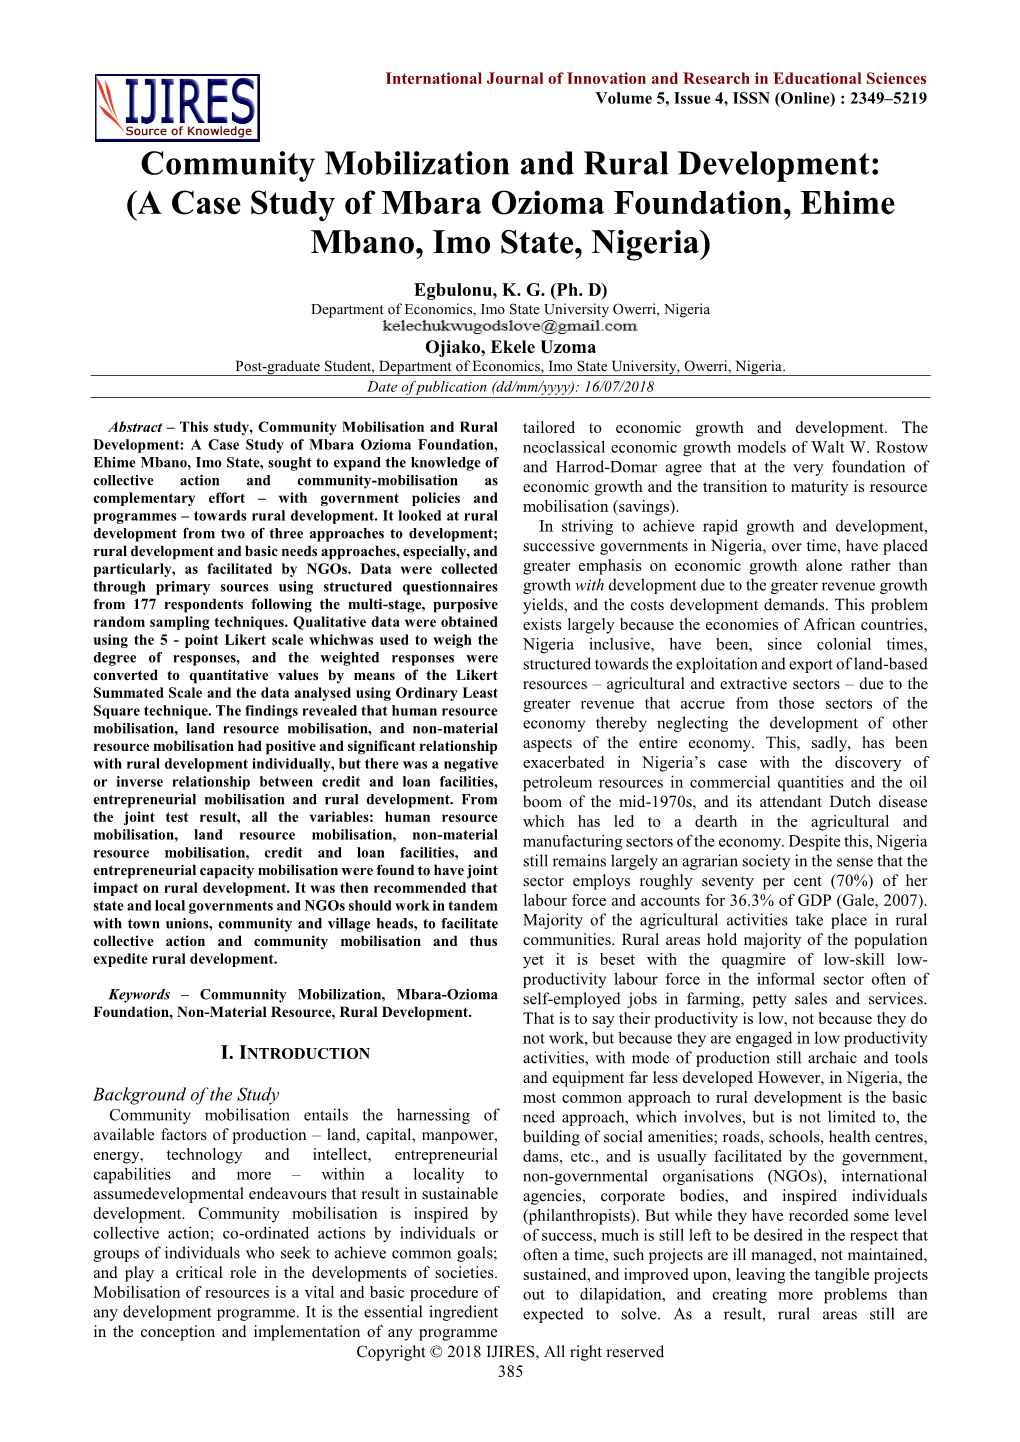 A Case Study of Mbara Ozioma Foundation, Ehime Mbano, Imo State, Nigeria)